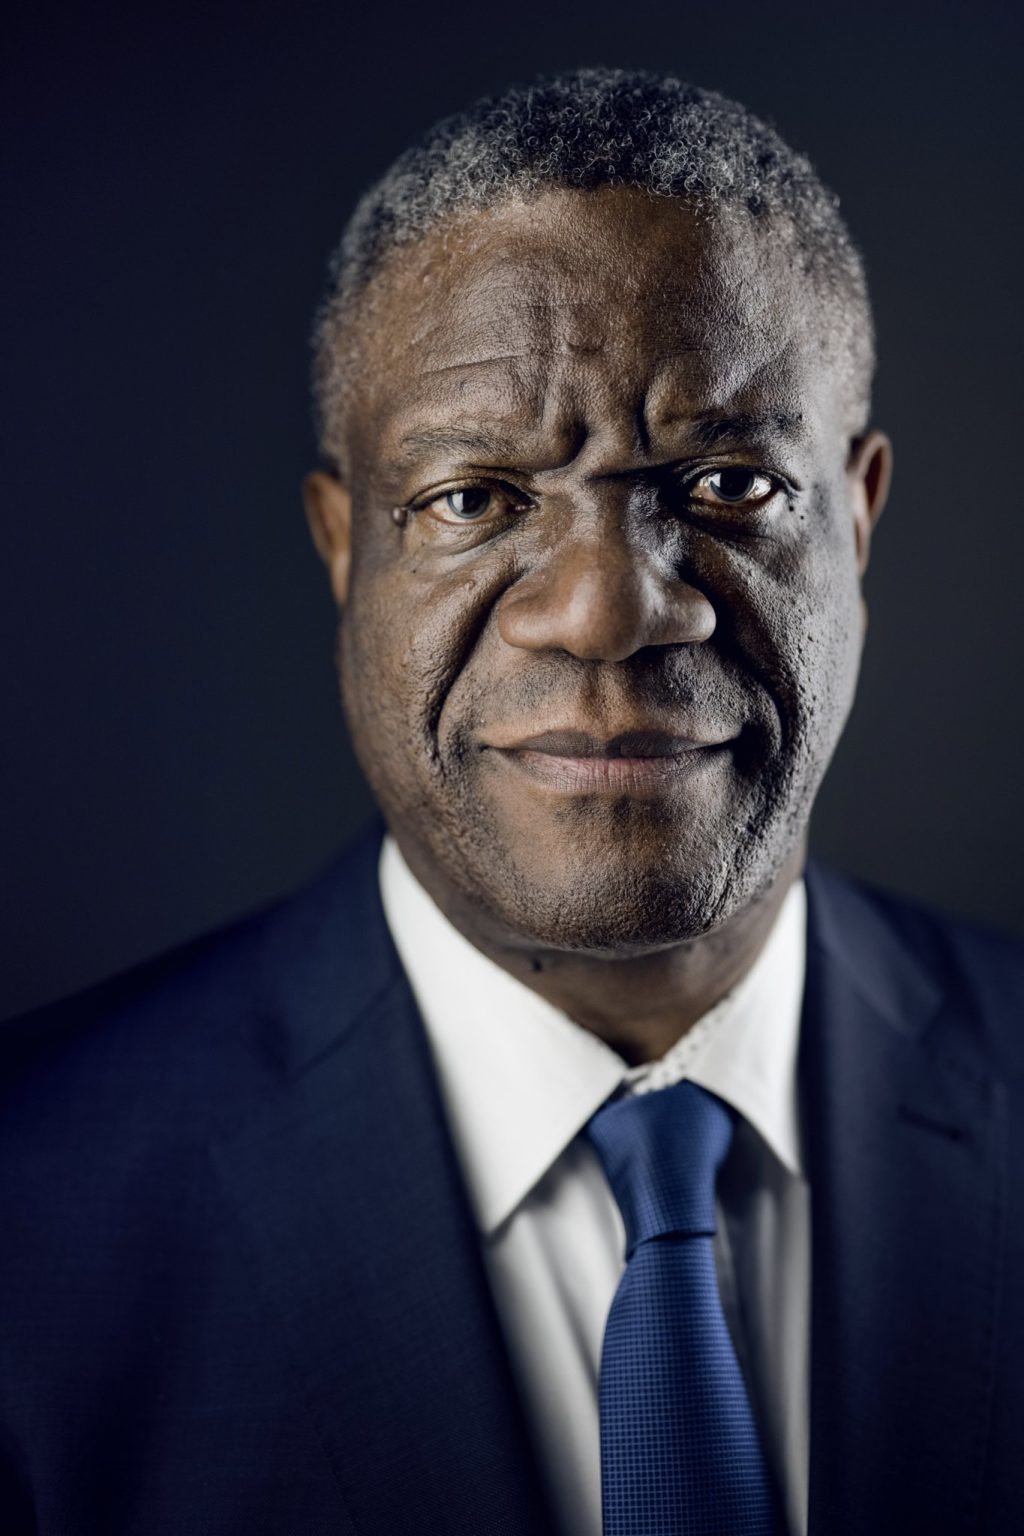 Une image du Dr Mukwege